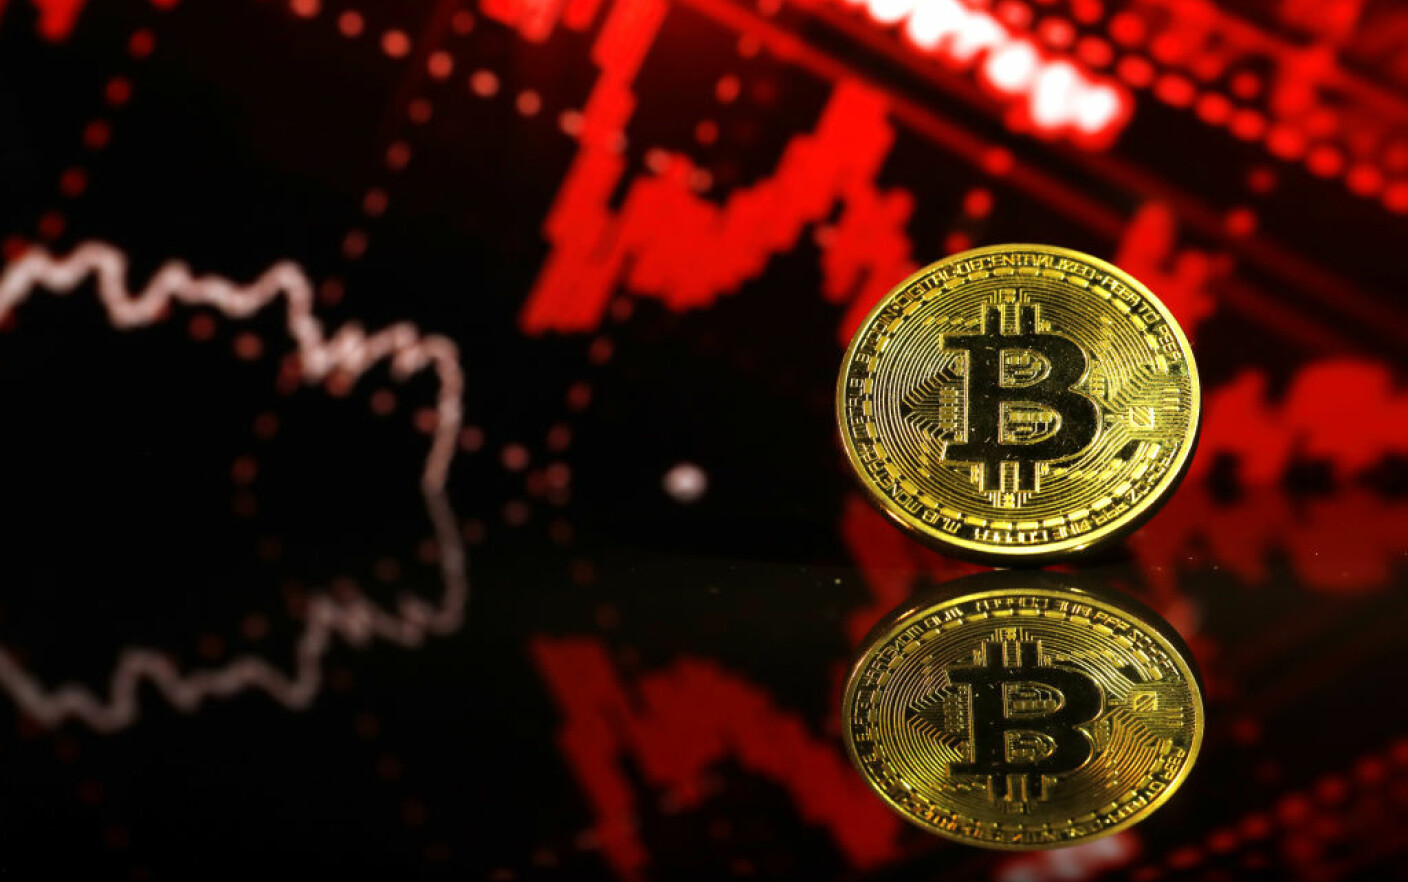 Citeste ultimele stiri legate de bitcoin | Wall-Street